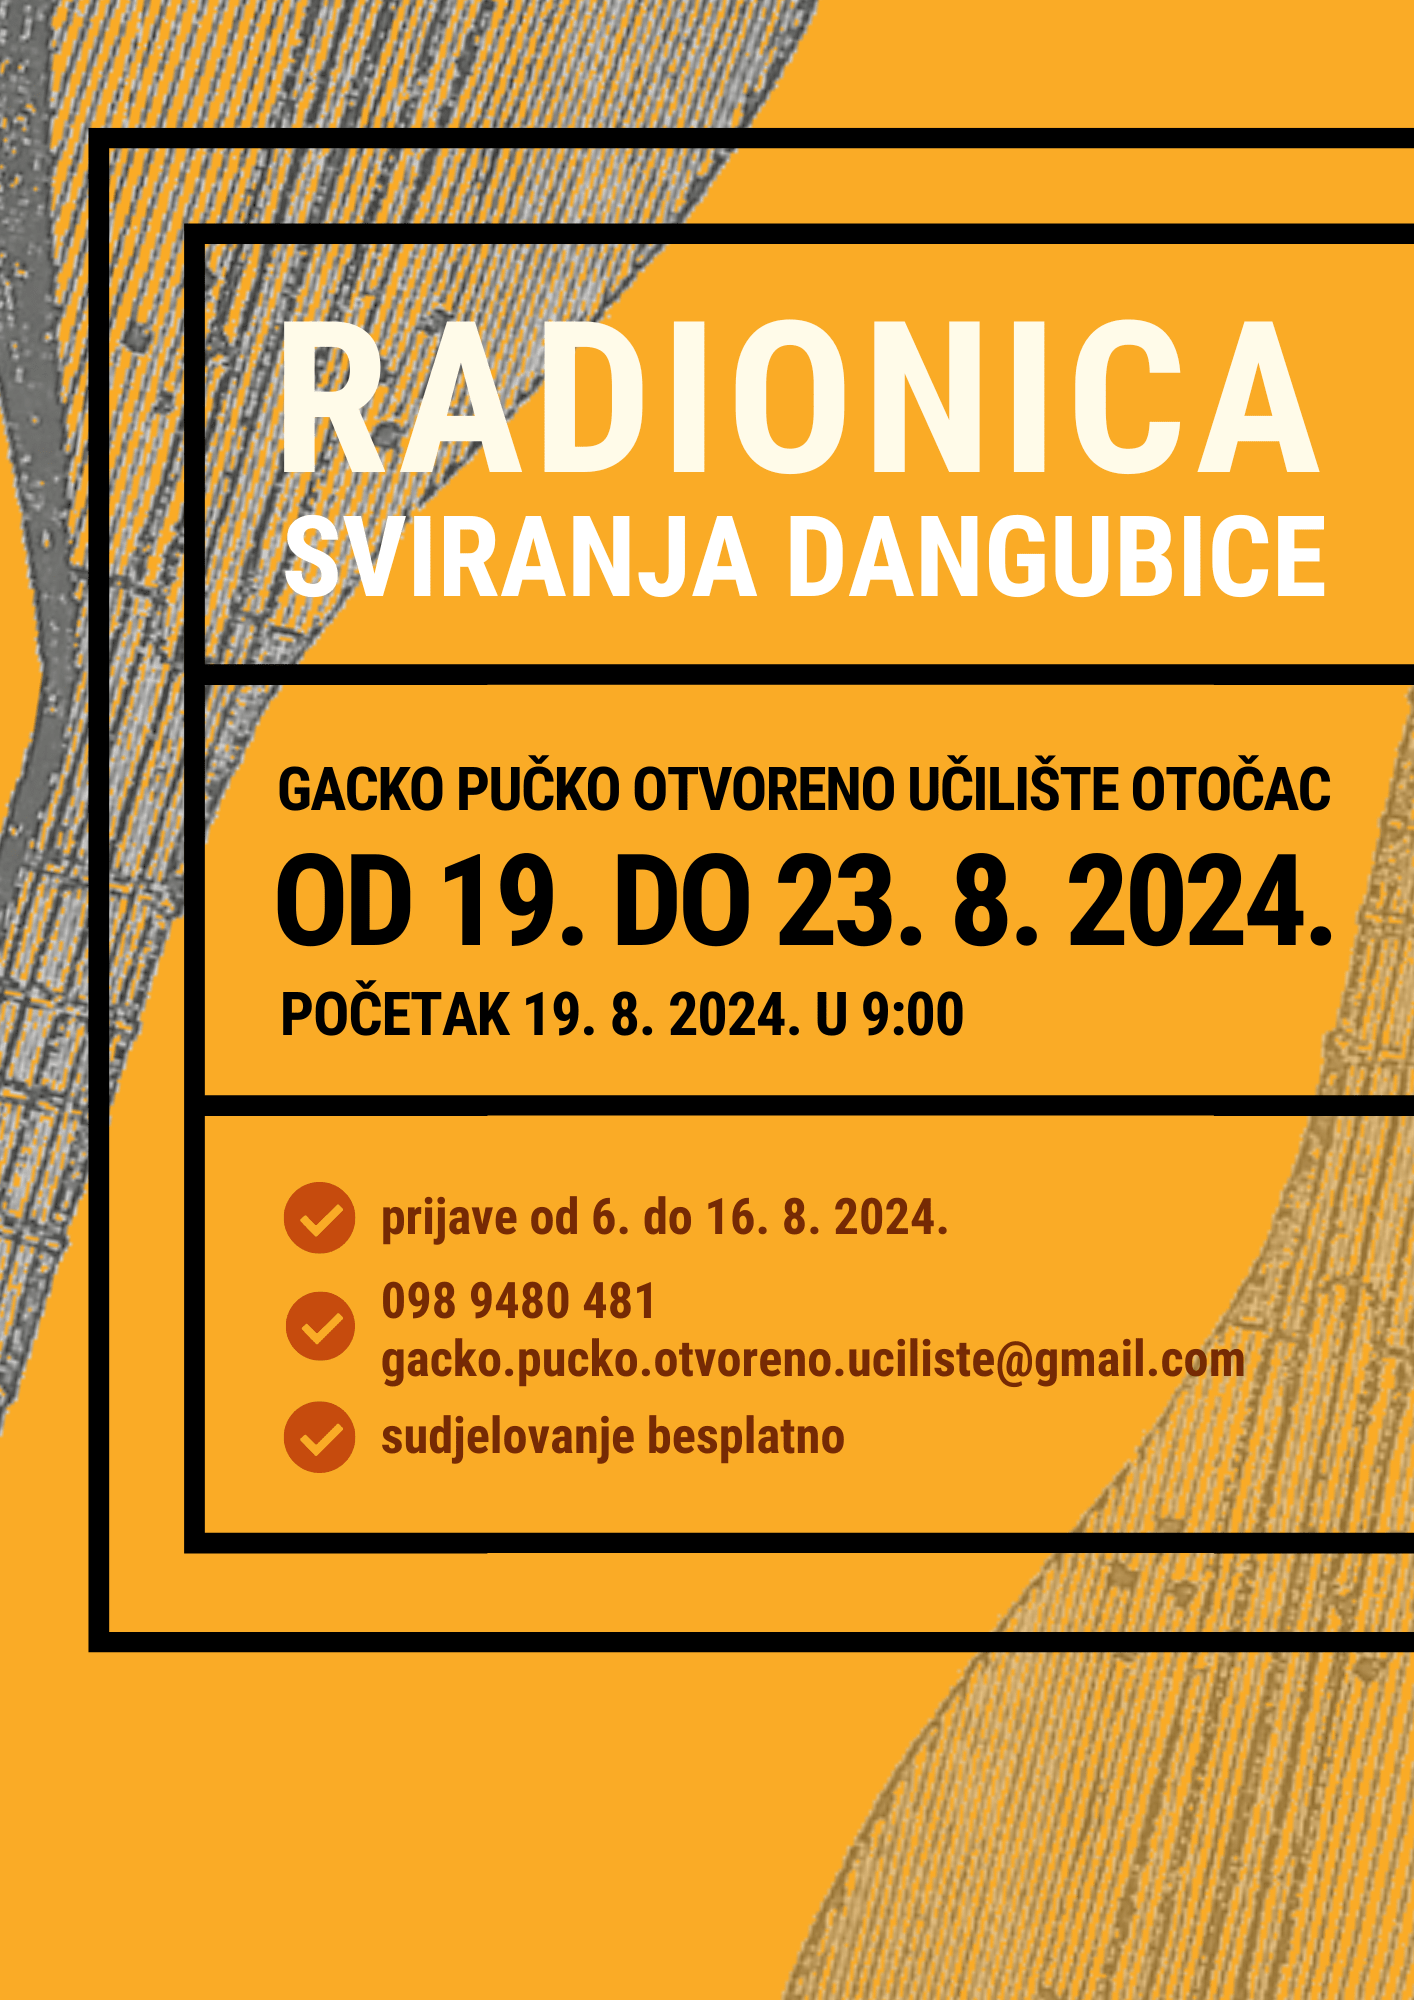 Gacko pučko otvoreno učilište Otočac - Radionica sviranja dangubice - 2024